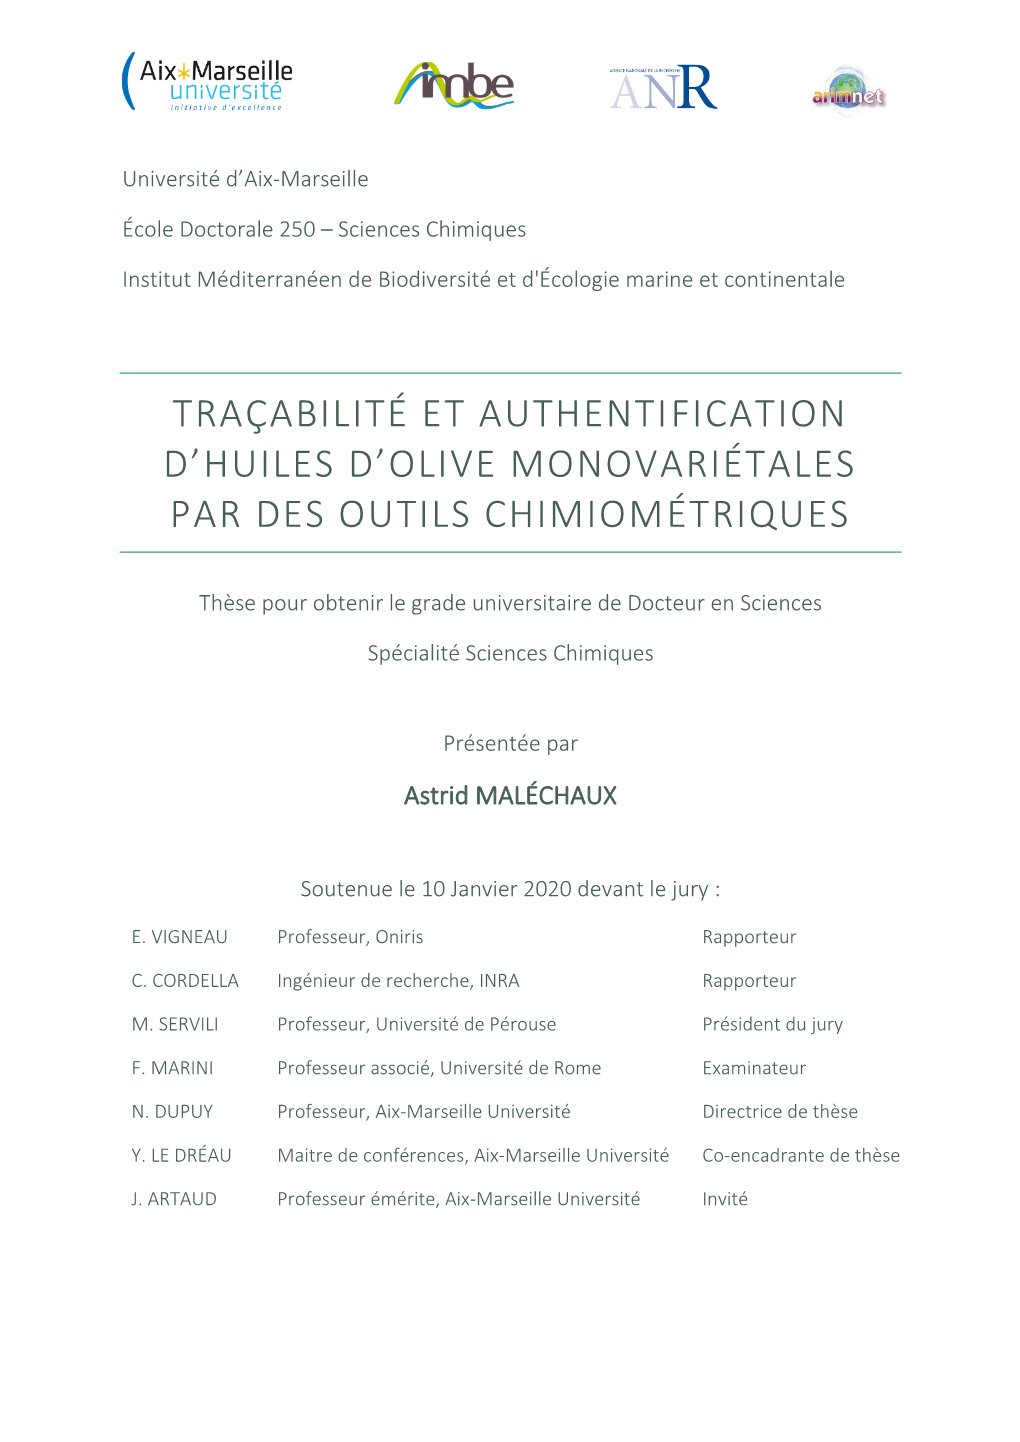 Traçabilité Et Authentification D'huiles D